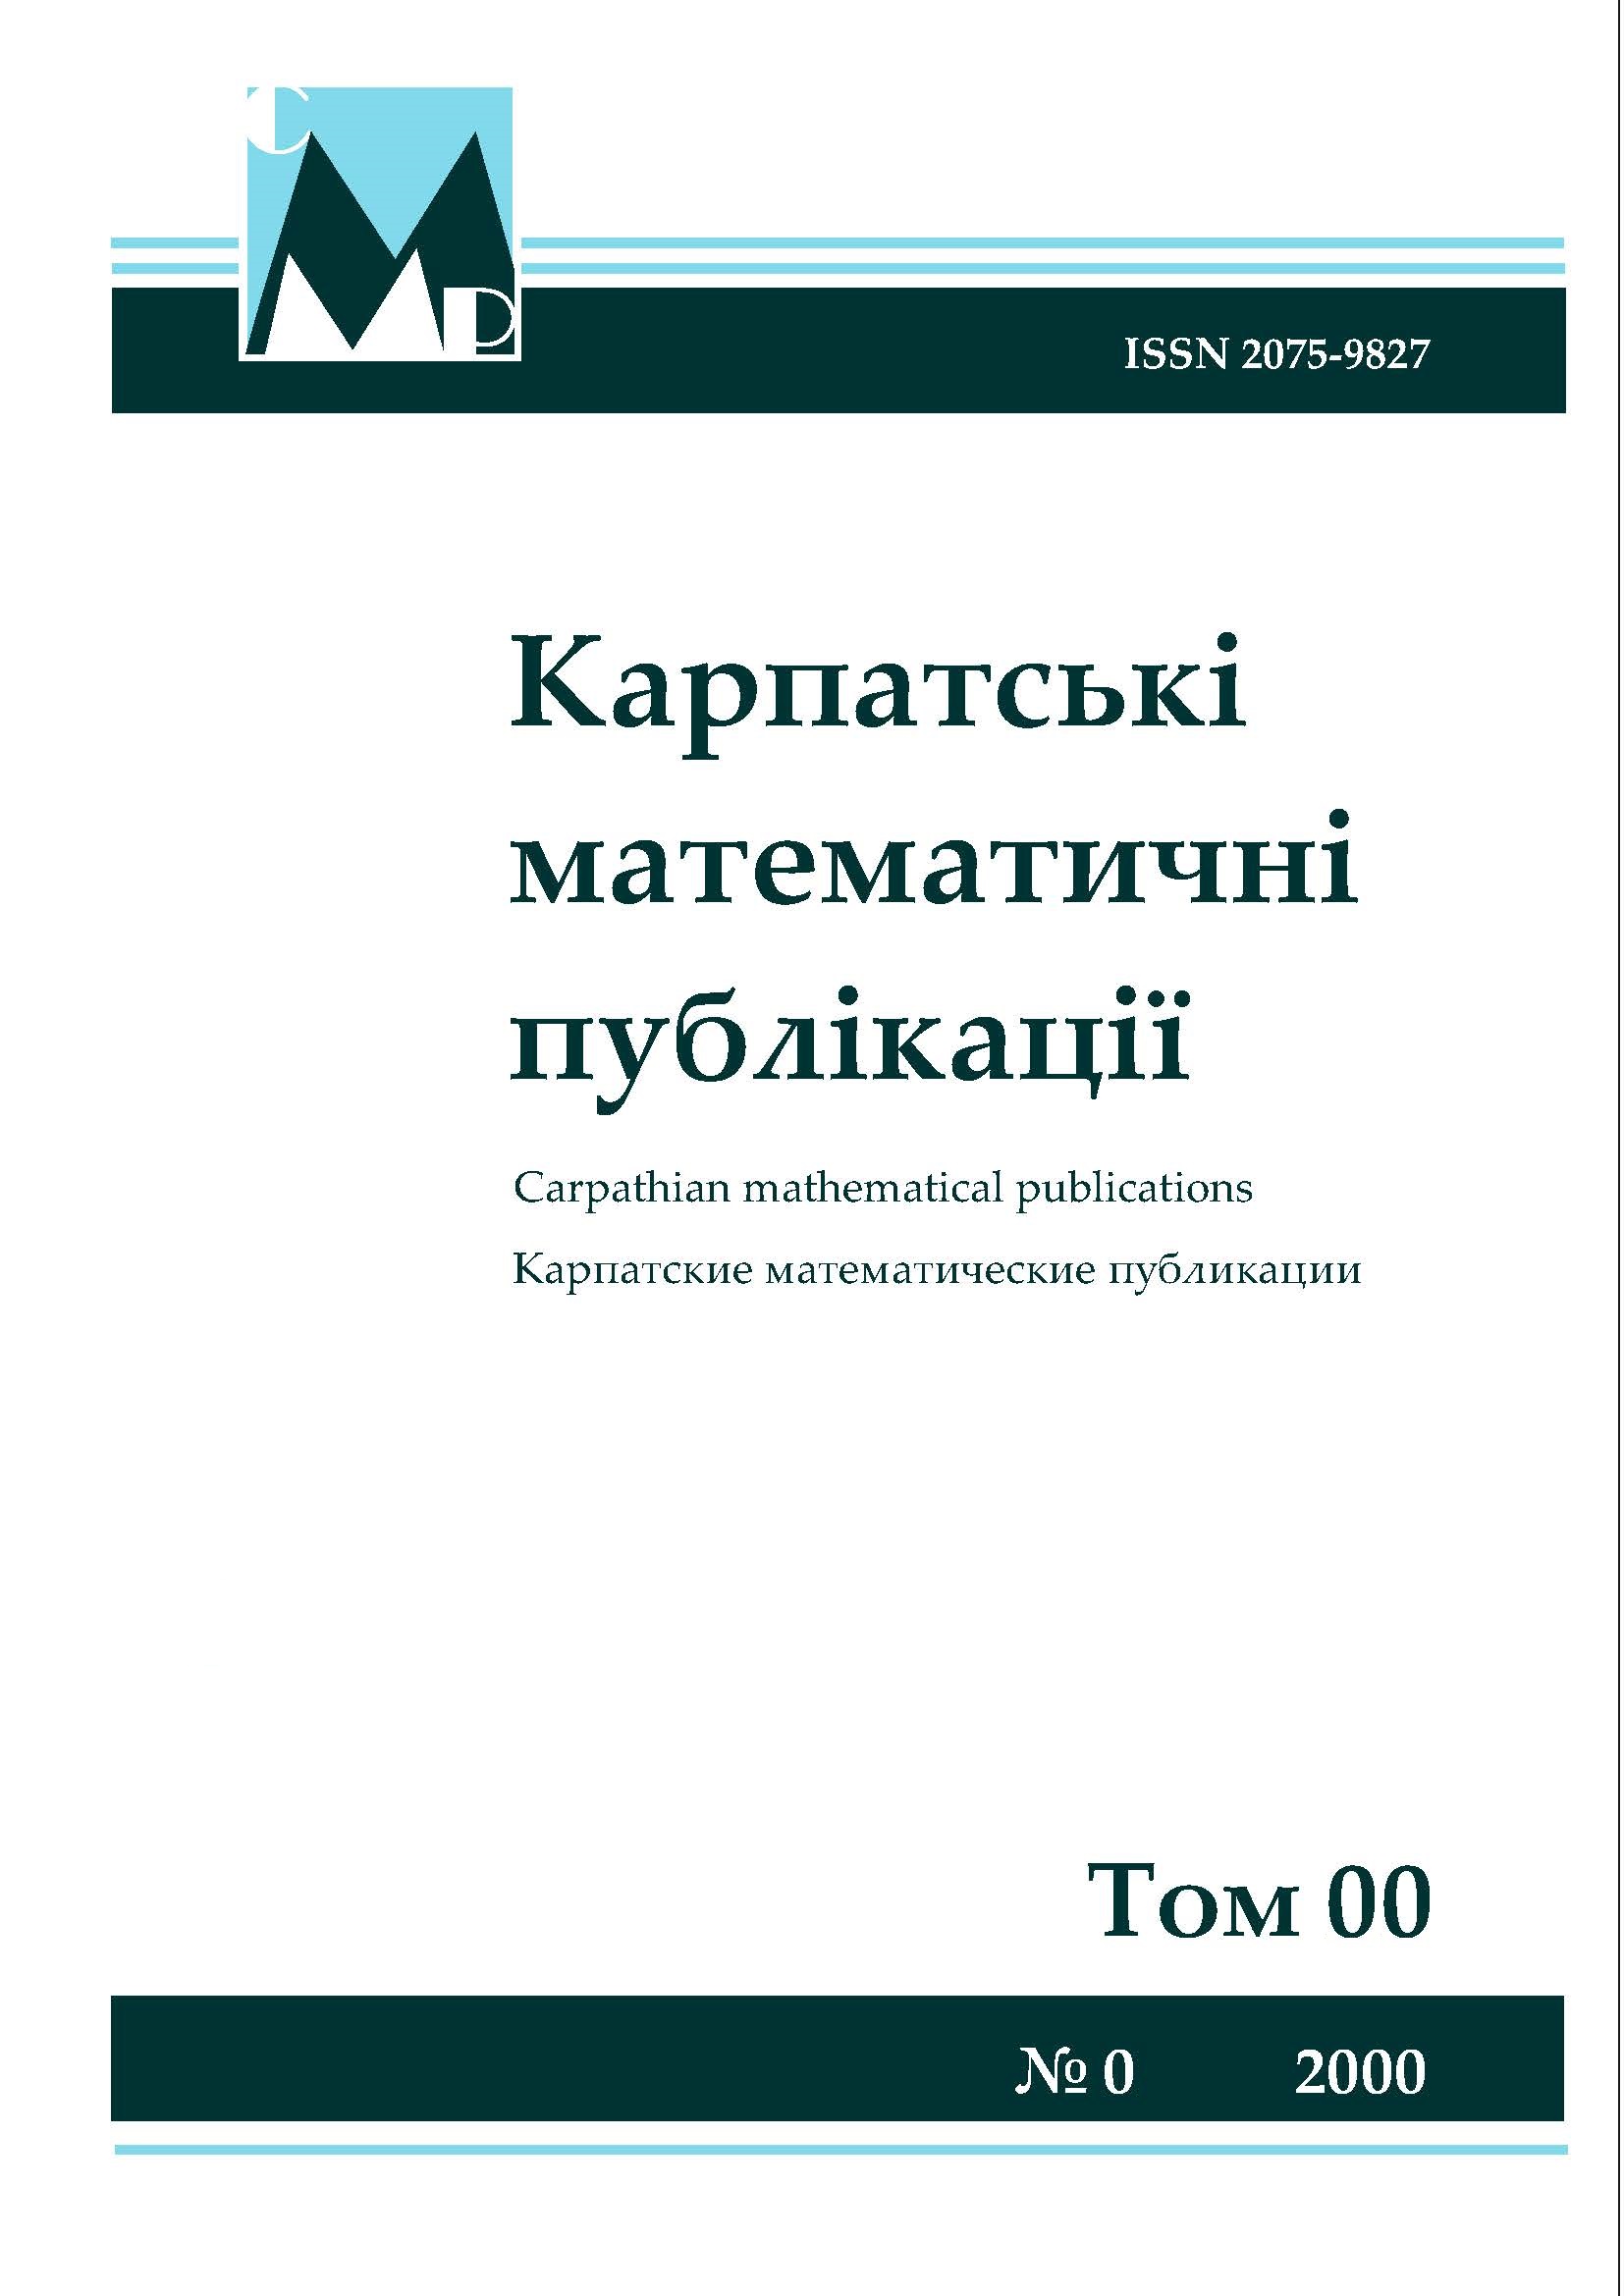 Carpathian Mathematical Publications